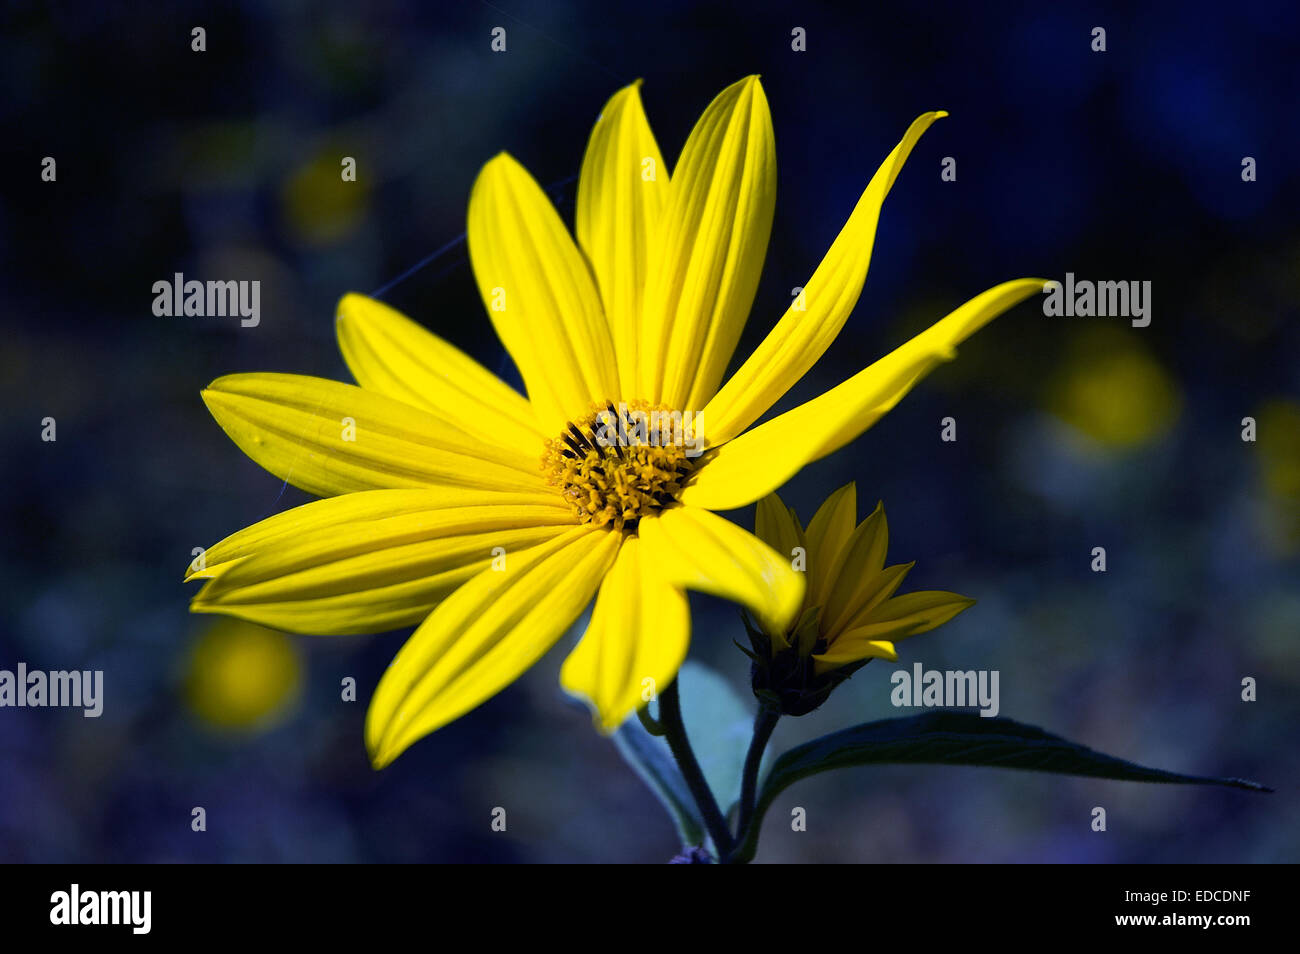 Beautiful yellow flower Stock Photo - Alamy